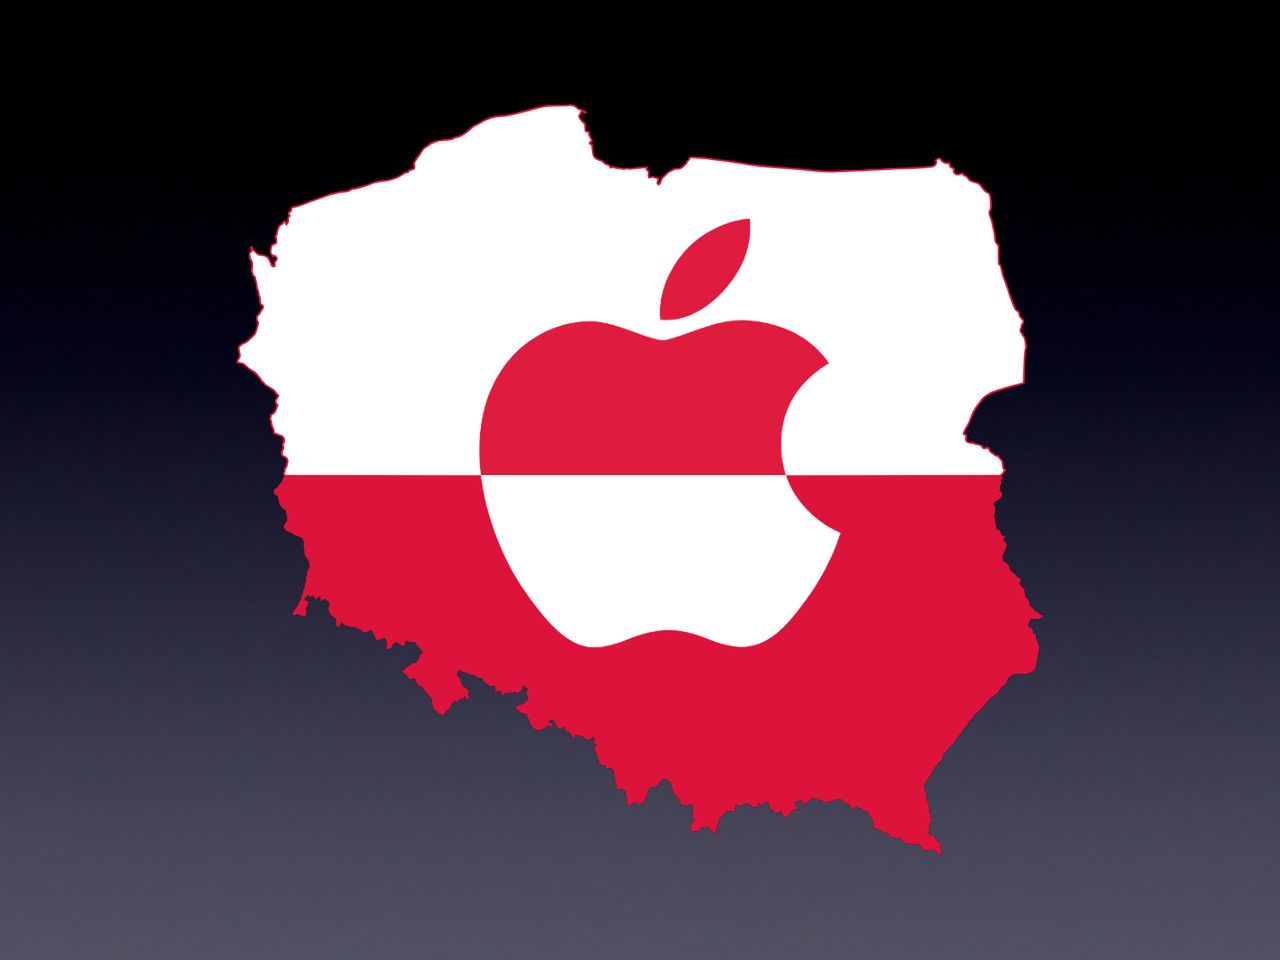 Kolejne usługi Apple'a trafiają do Polski jedna po drugiej. Czyżby gigant miał poważniejsze plany odnośnie naszego rynku?